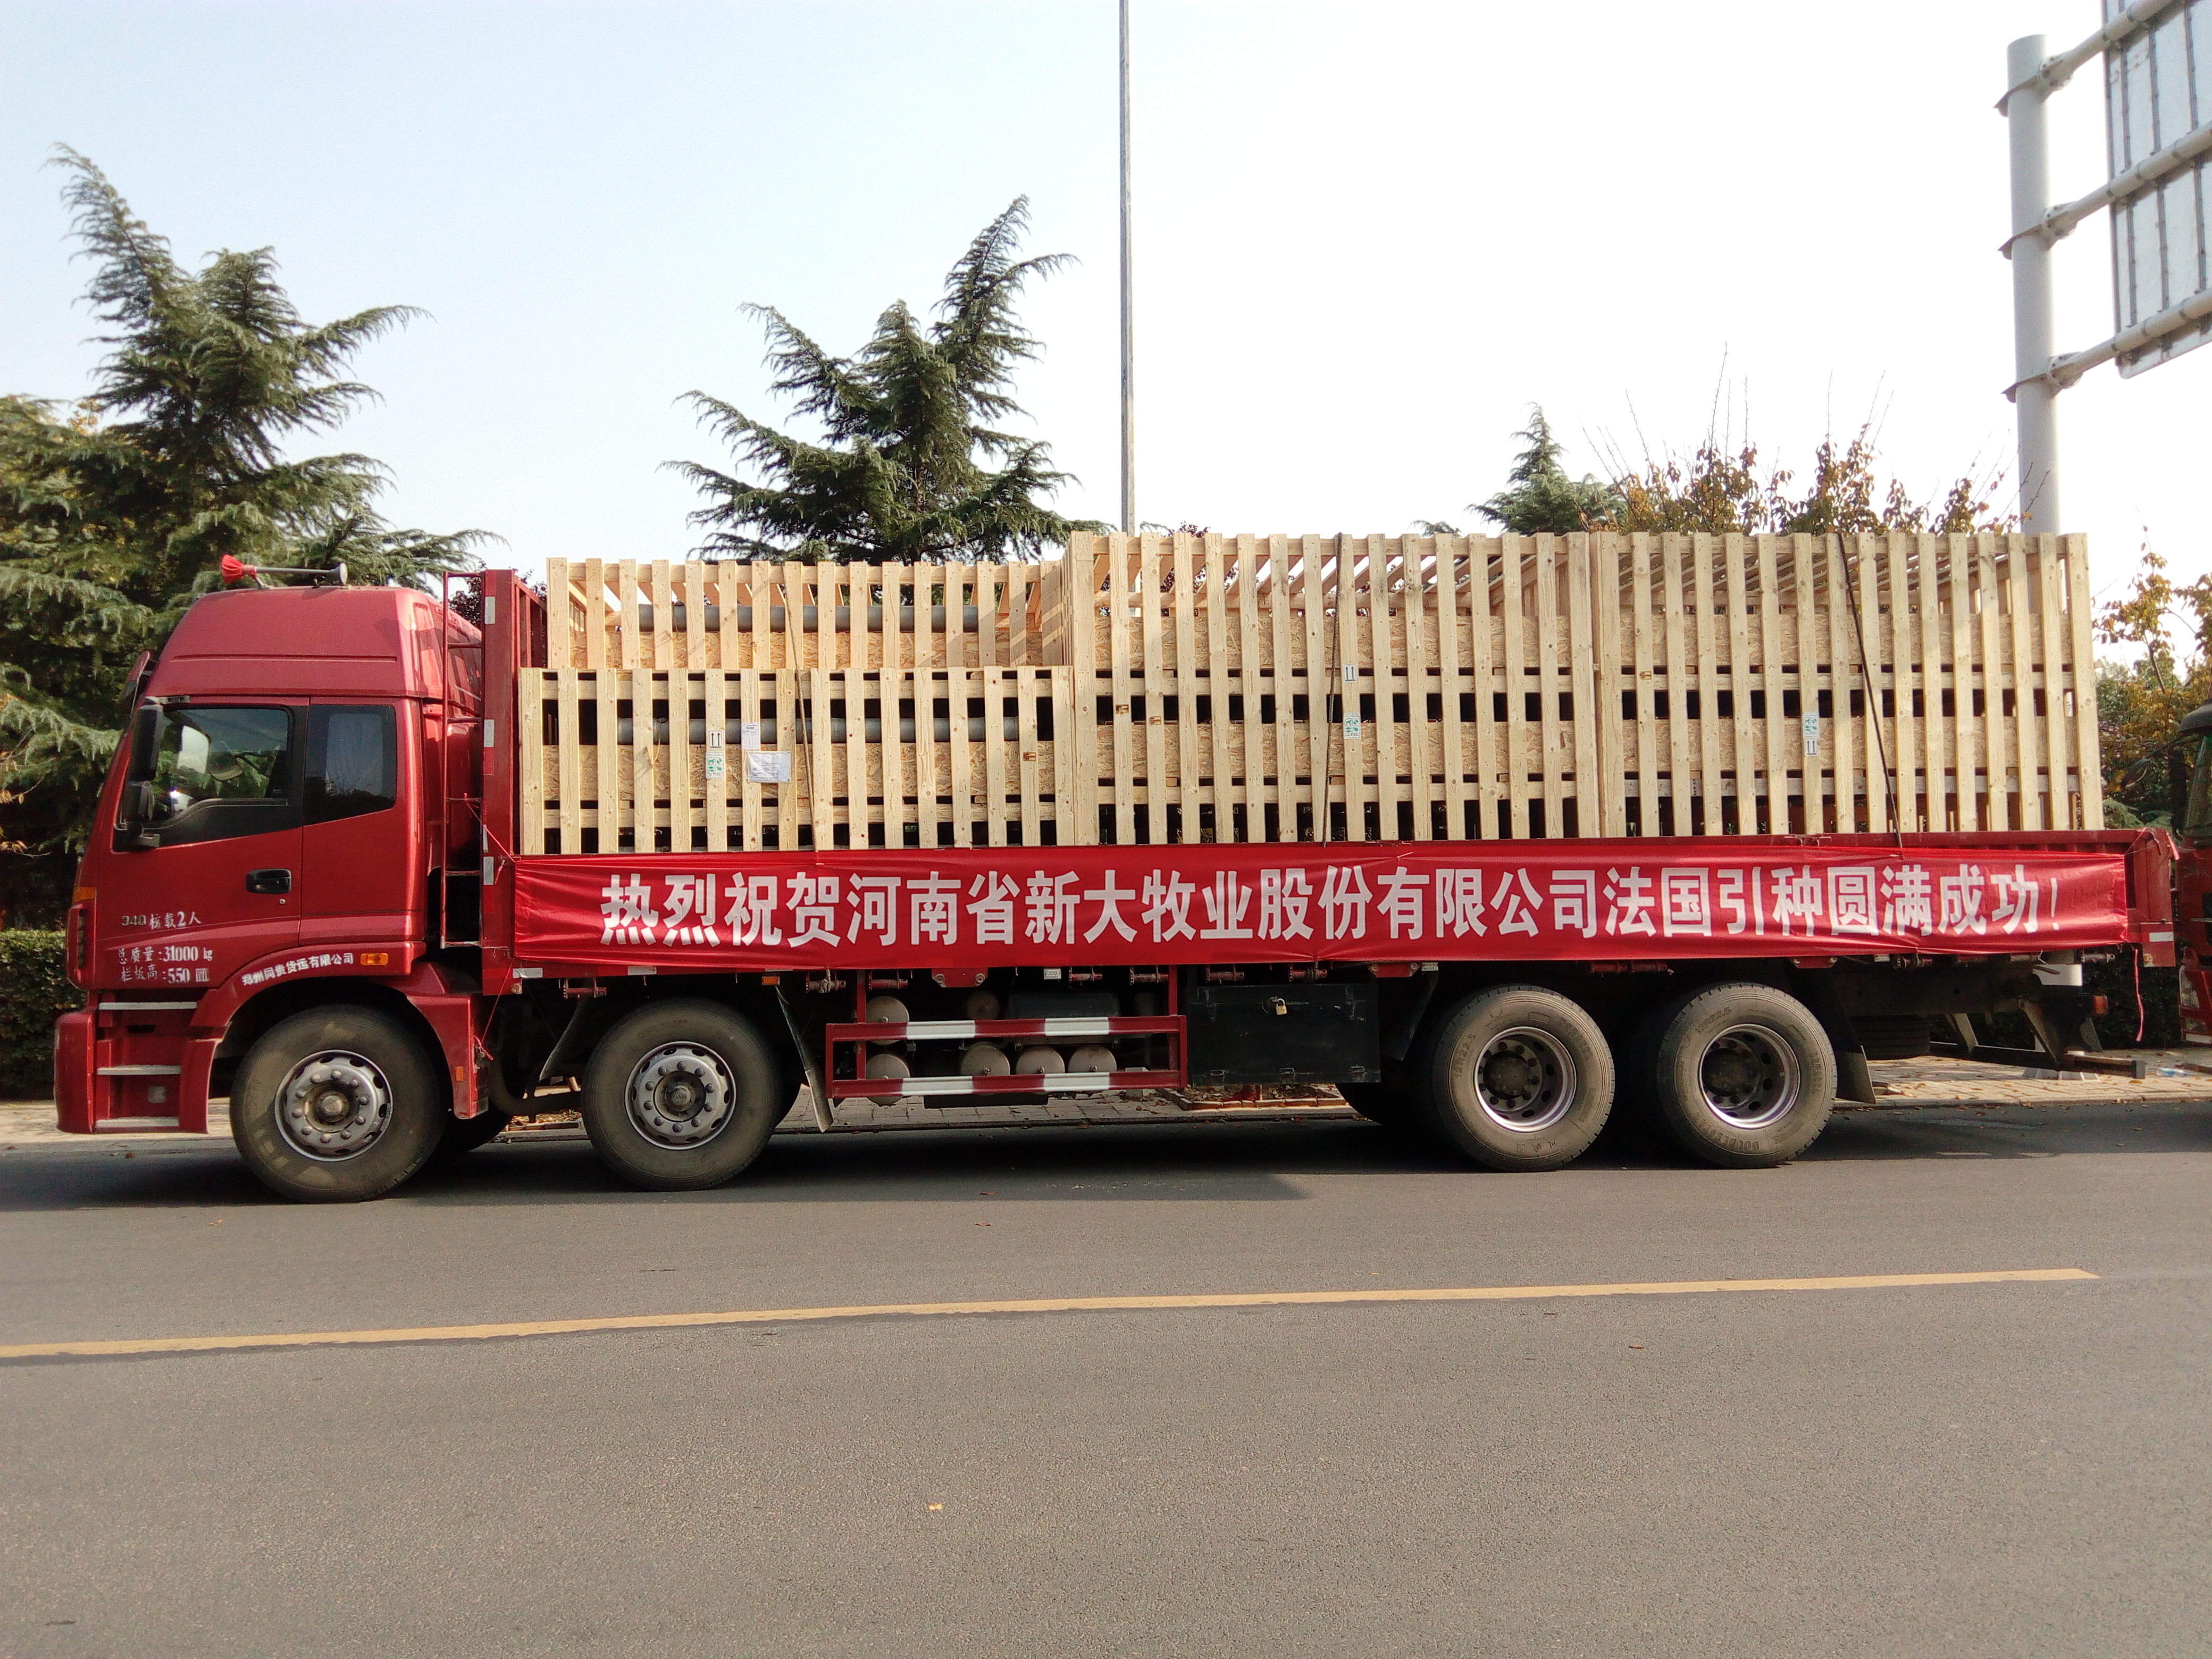 Arrivée animaux Xinda 2017 camion